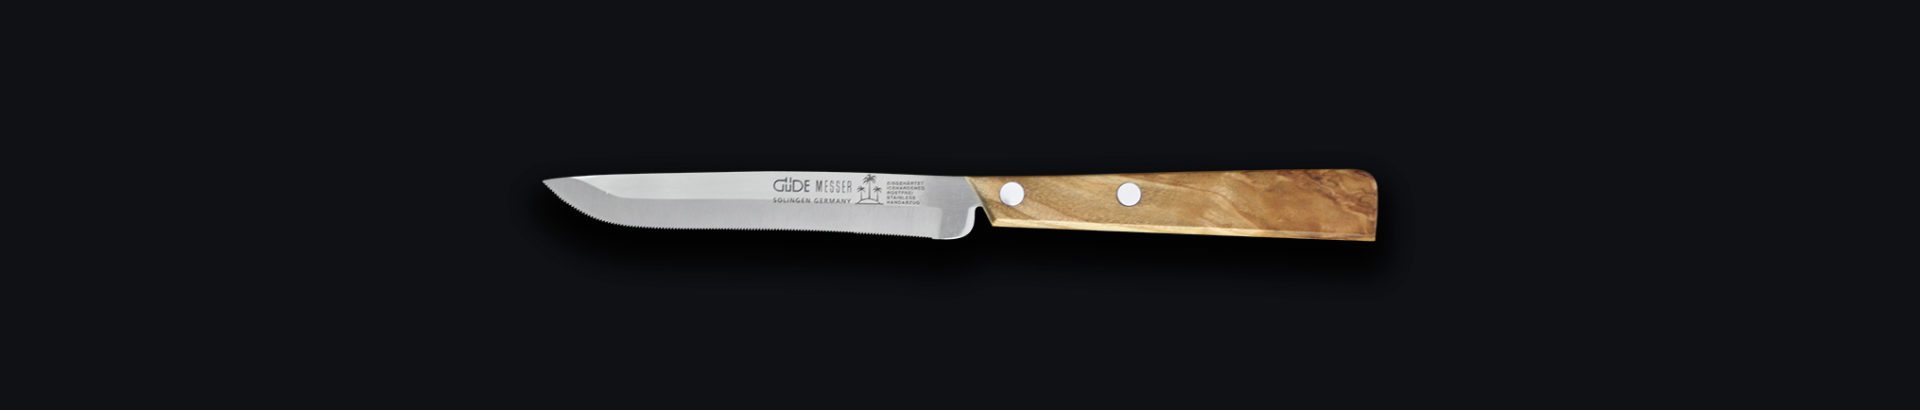 Güde Universalmesser Serie Steakmesser 9300/11 11 cm 